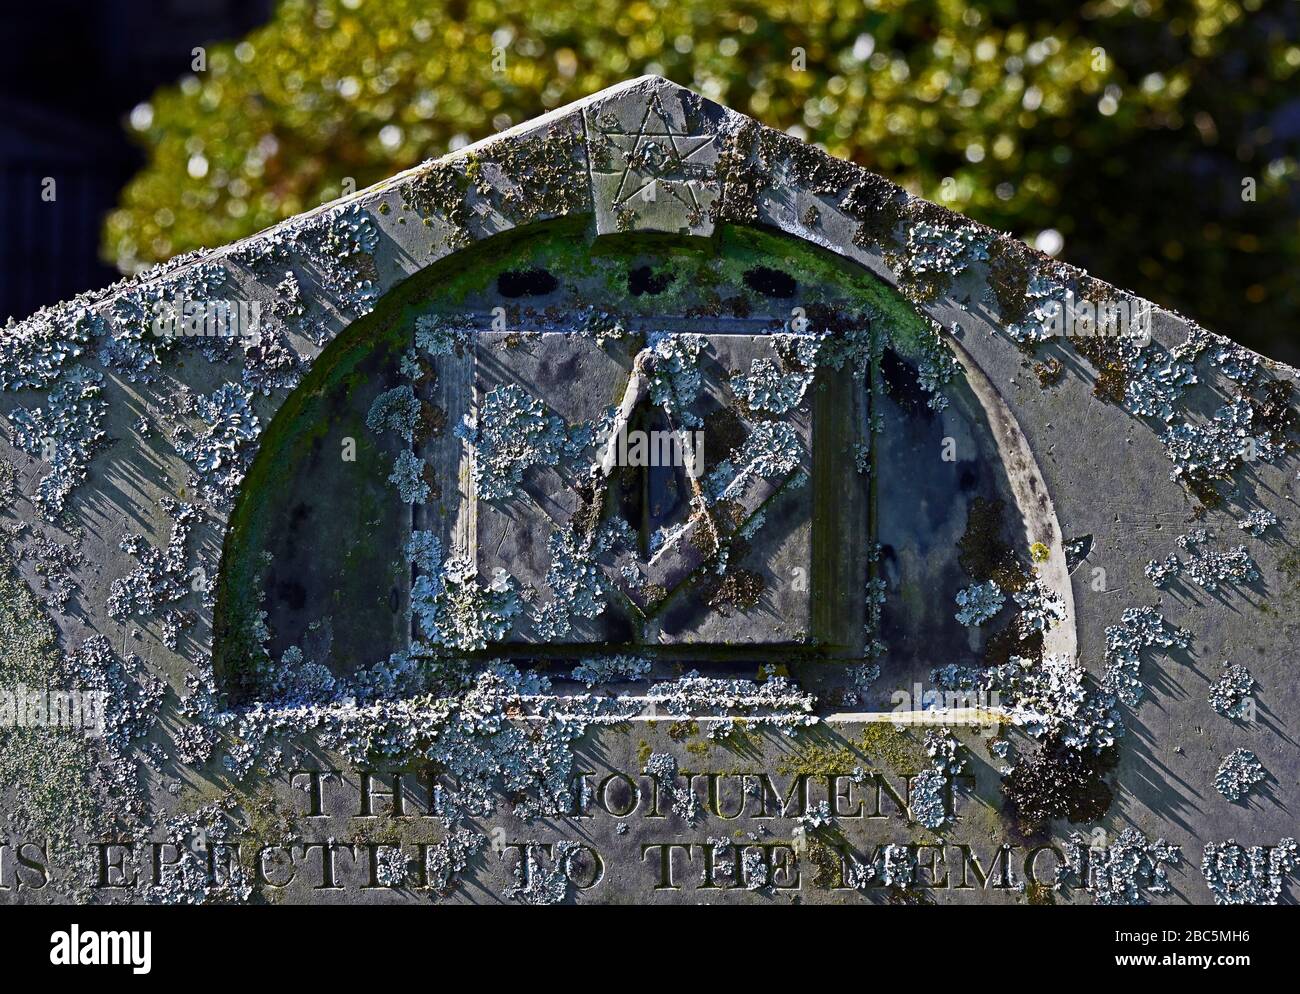 Dettaglio di Gravestone con simboli massonici. Chiesa parrocchiale della Santissima Trinità, Kendal, Cumbria, Inghilterra, Regno Unito, Europa. Foto Stock